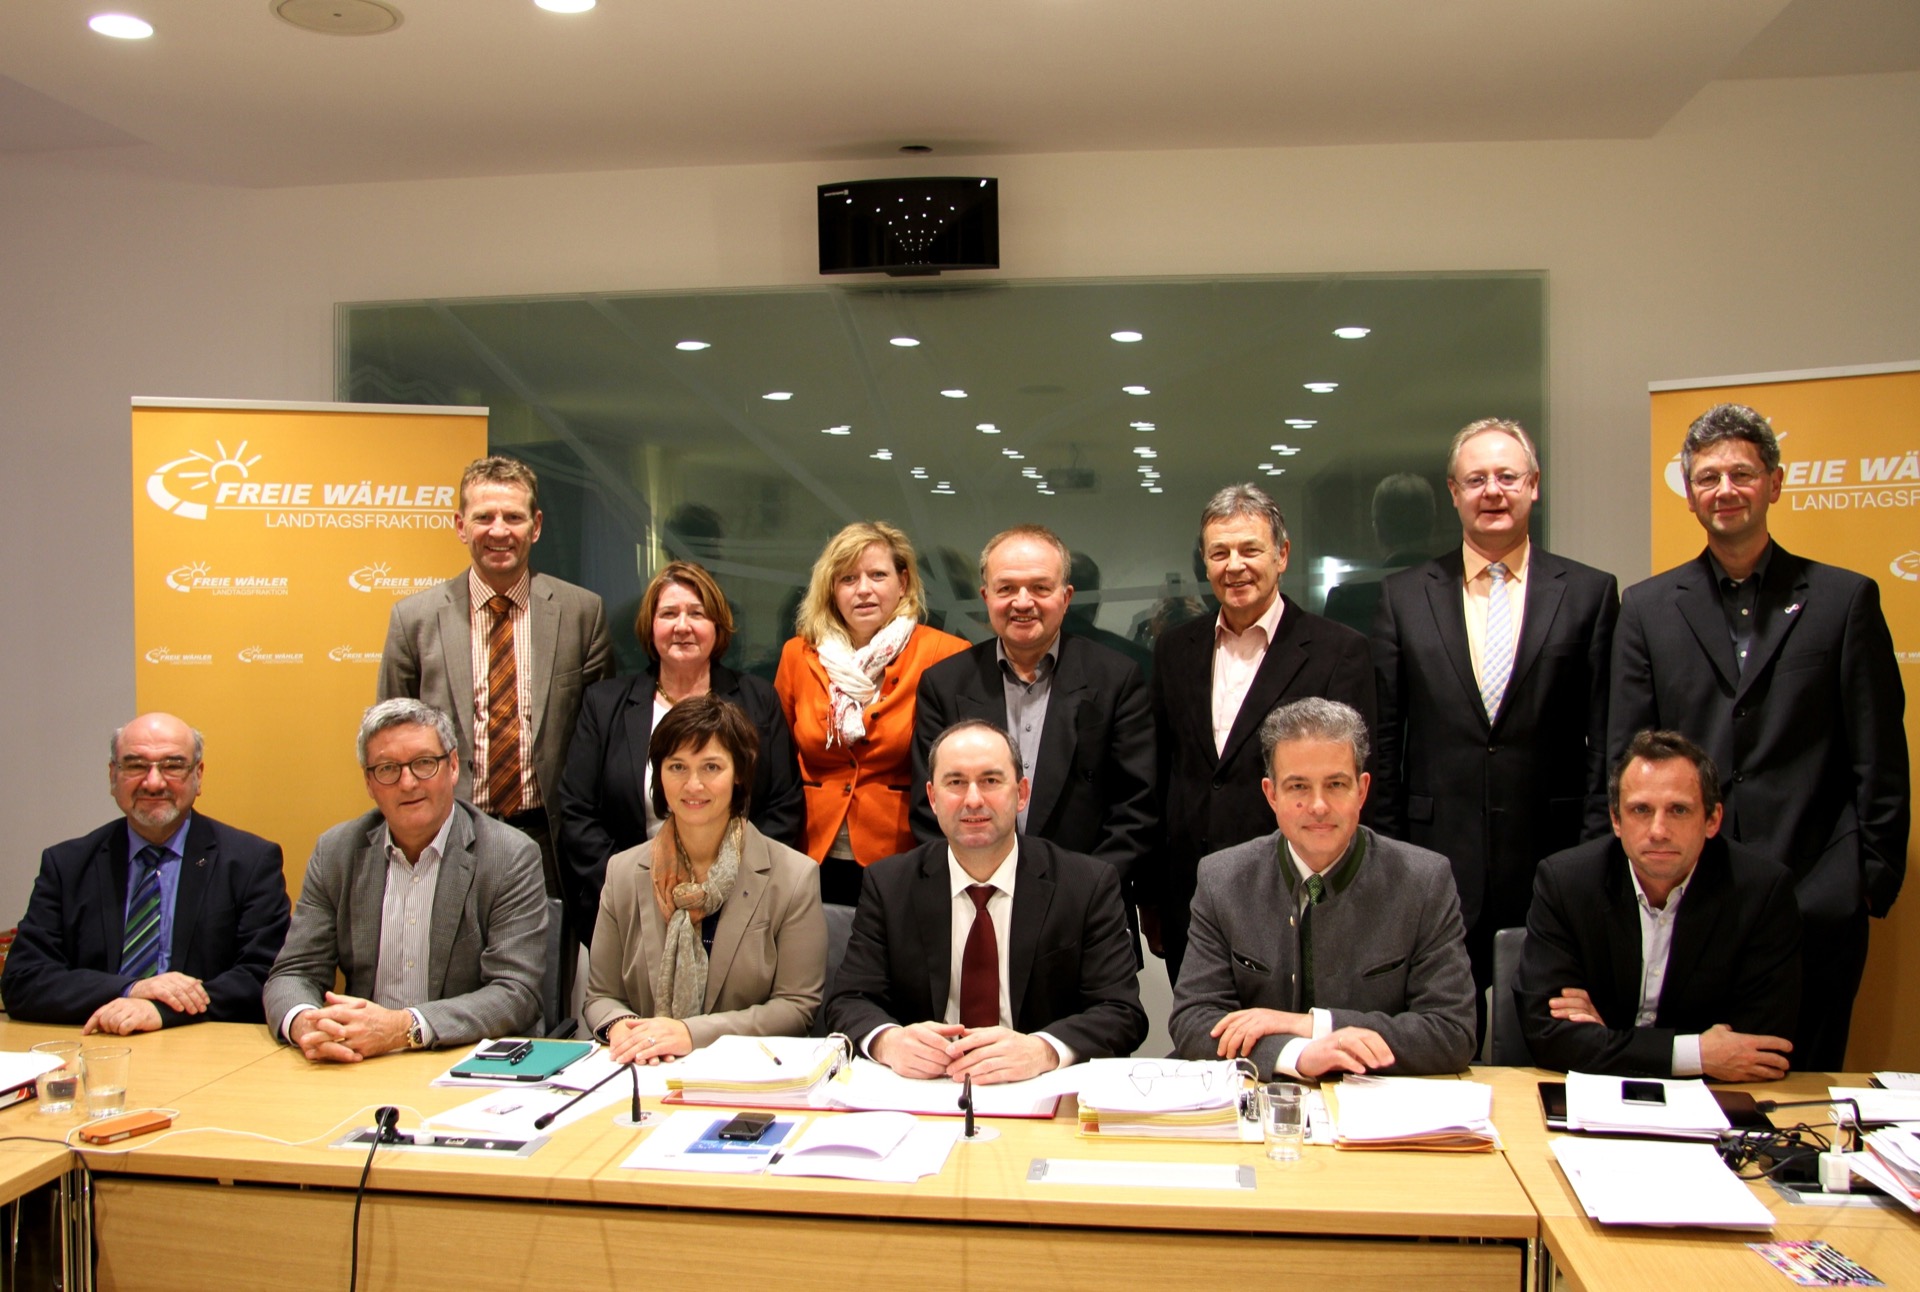 Unser Pressefoto zeigt die Europaabgeordnete Ulrike Müller (sitzend, dritte von links) am Mittwochnachmittag mit Fraktionschef Hubert Aiwanger (sitzend, dritter von rechts) und den weiteren Abgeordneten der FREIE WÄHLER Landtagsfraktion.